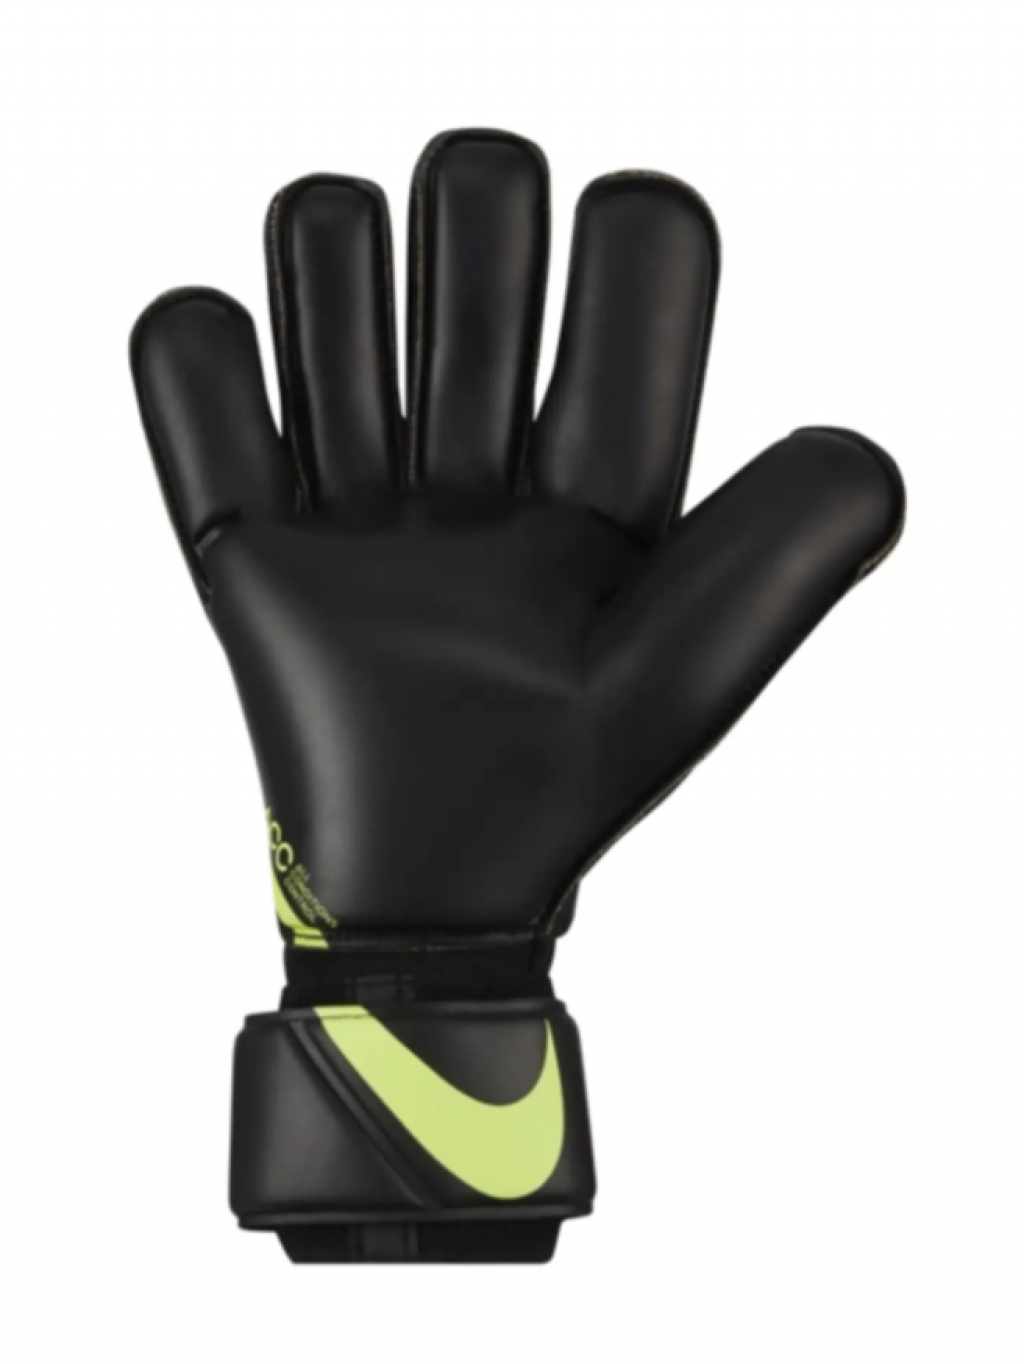 Перчатки профессиональные Nike GK Vapor Grip 3